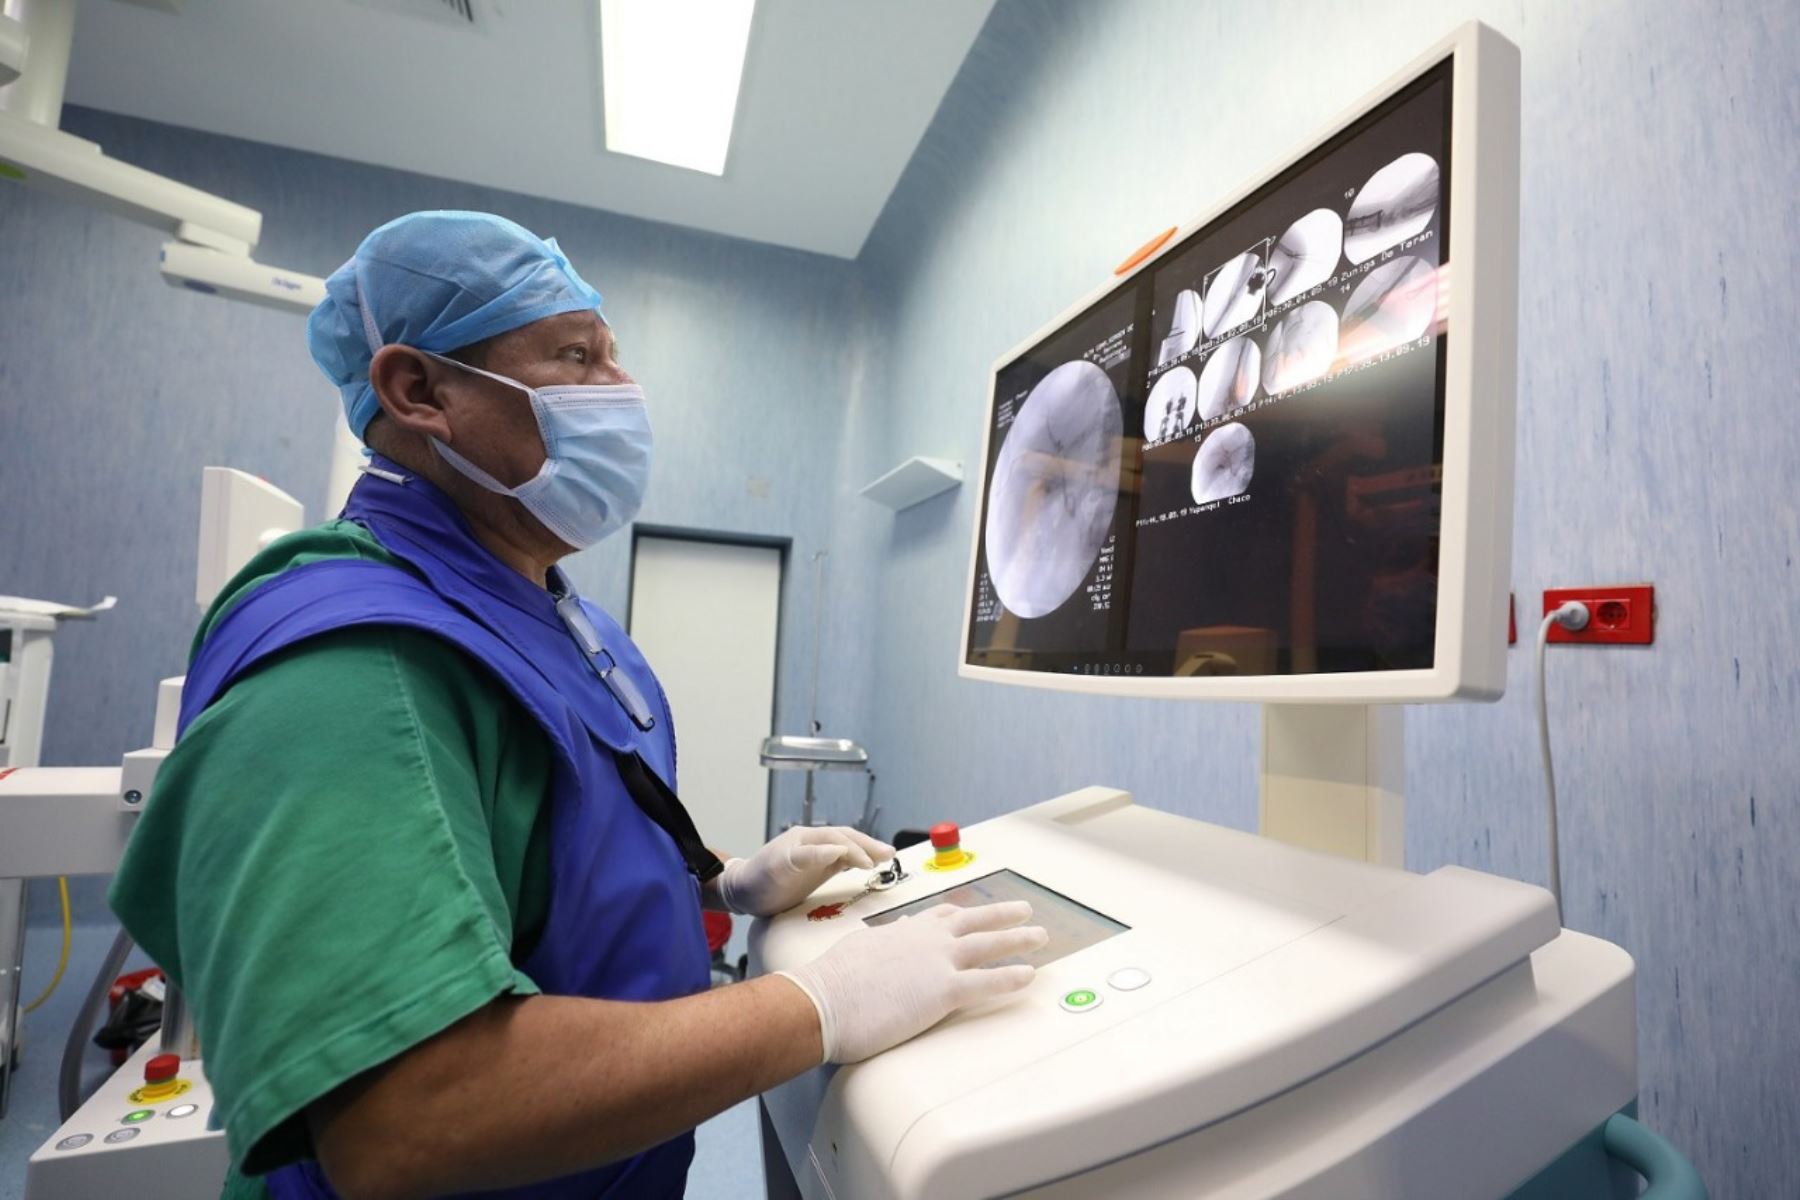 Equipo móvil de rayos X adquirido por EsSalud mejora los procedimientos de cirugía en el hospital Virgen de la Puerta.